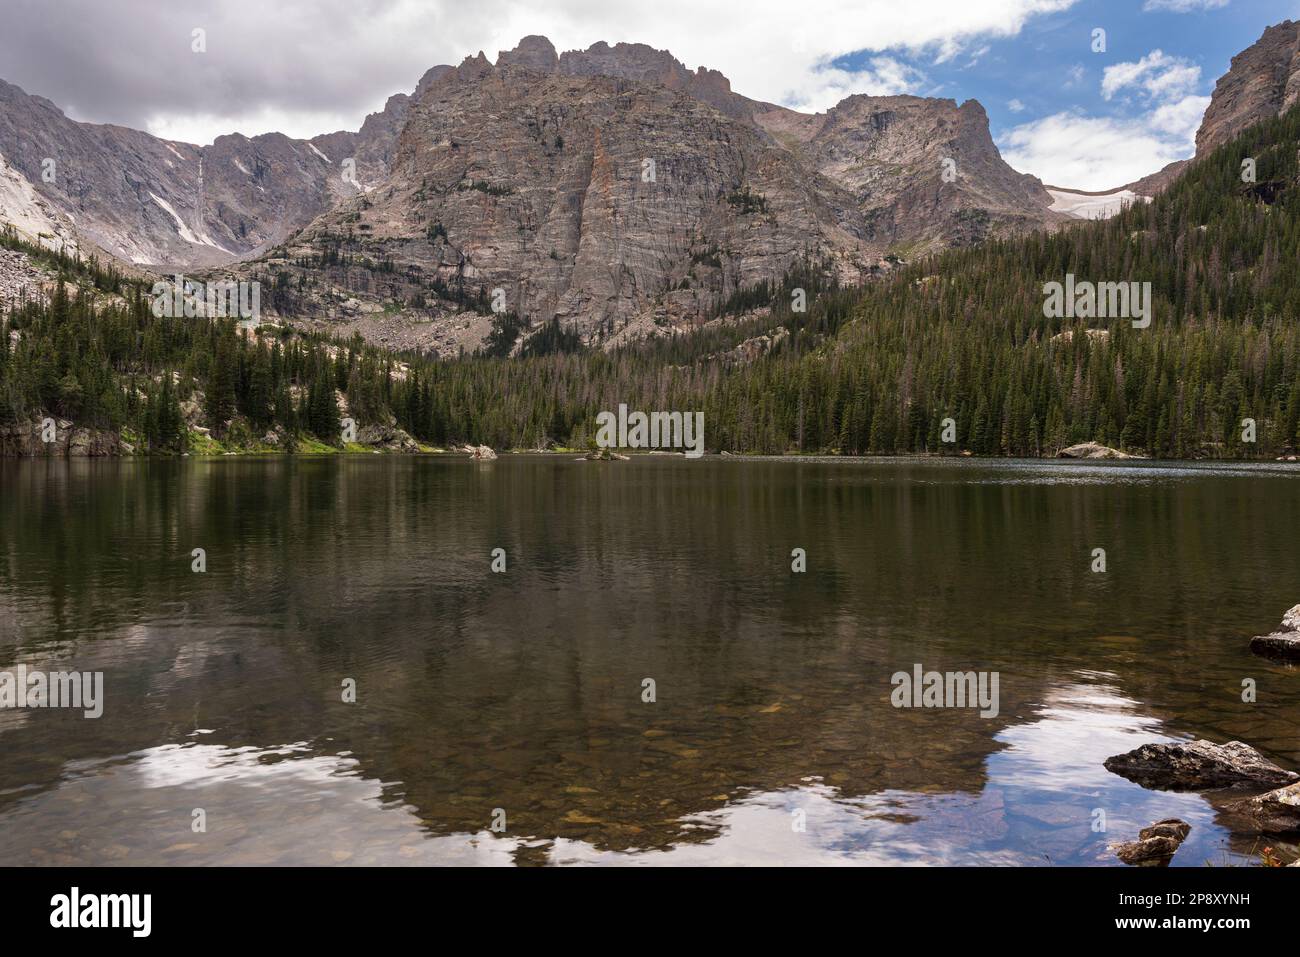 Le vette delle Montagne Rocciose si riflettono in una parte del lago Loch, una meta popolare per gli escursionisti per il suo splendido paesaggio presso il Rocky Mountain National Foto Stock